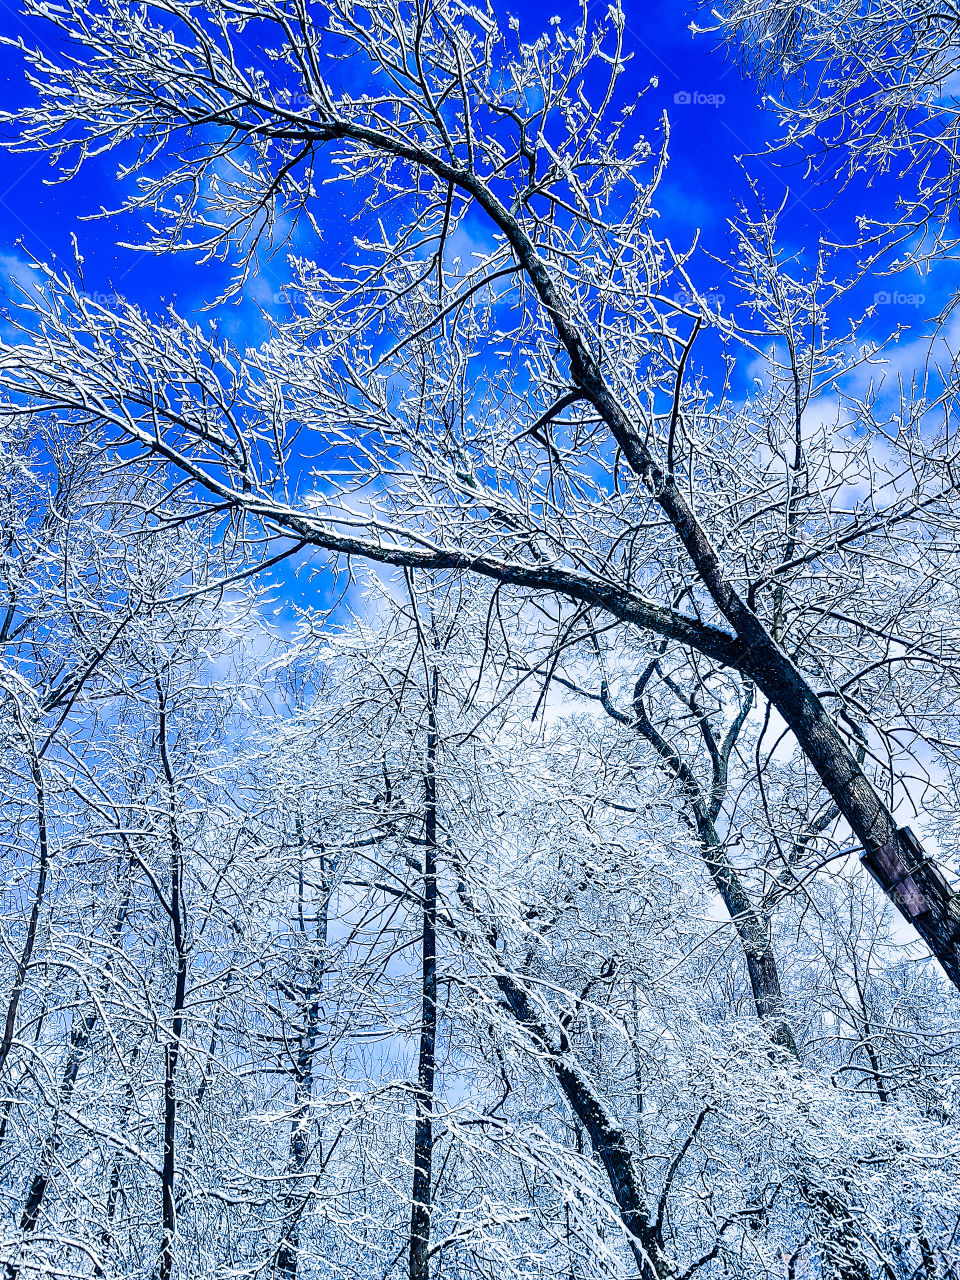 Amazing winter trees